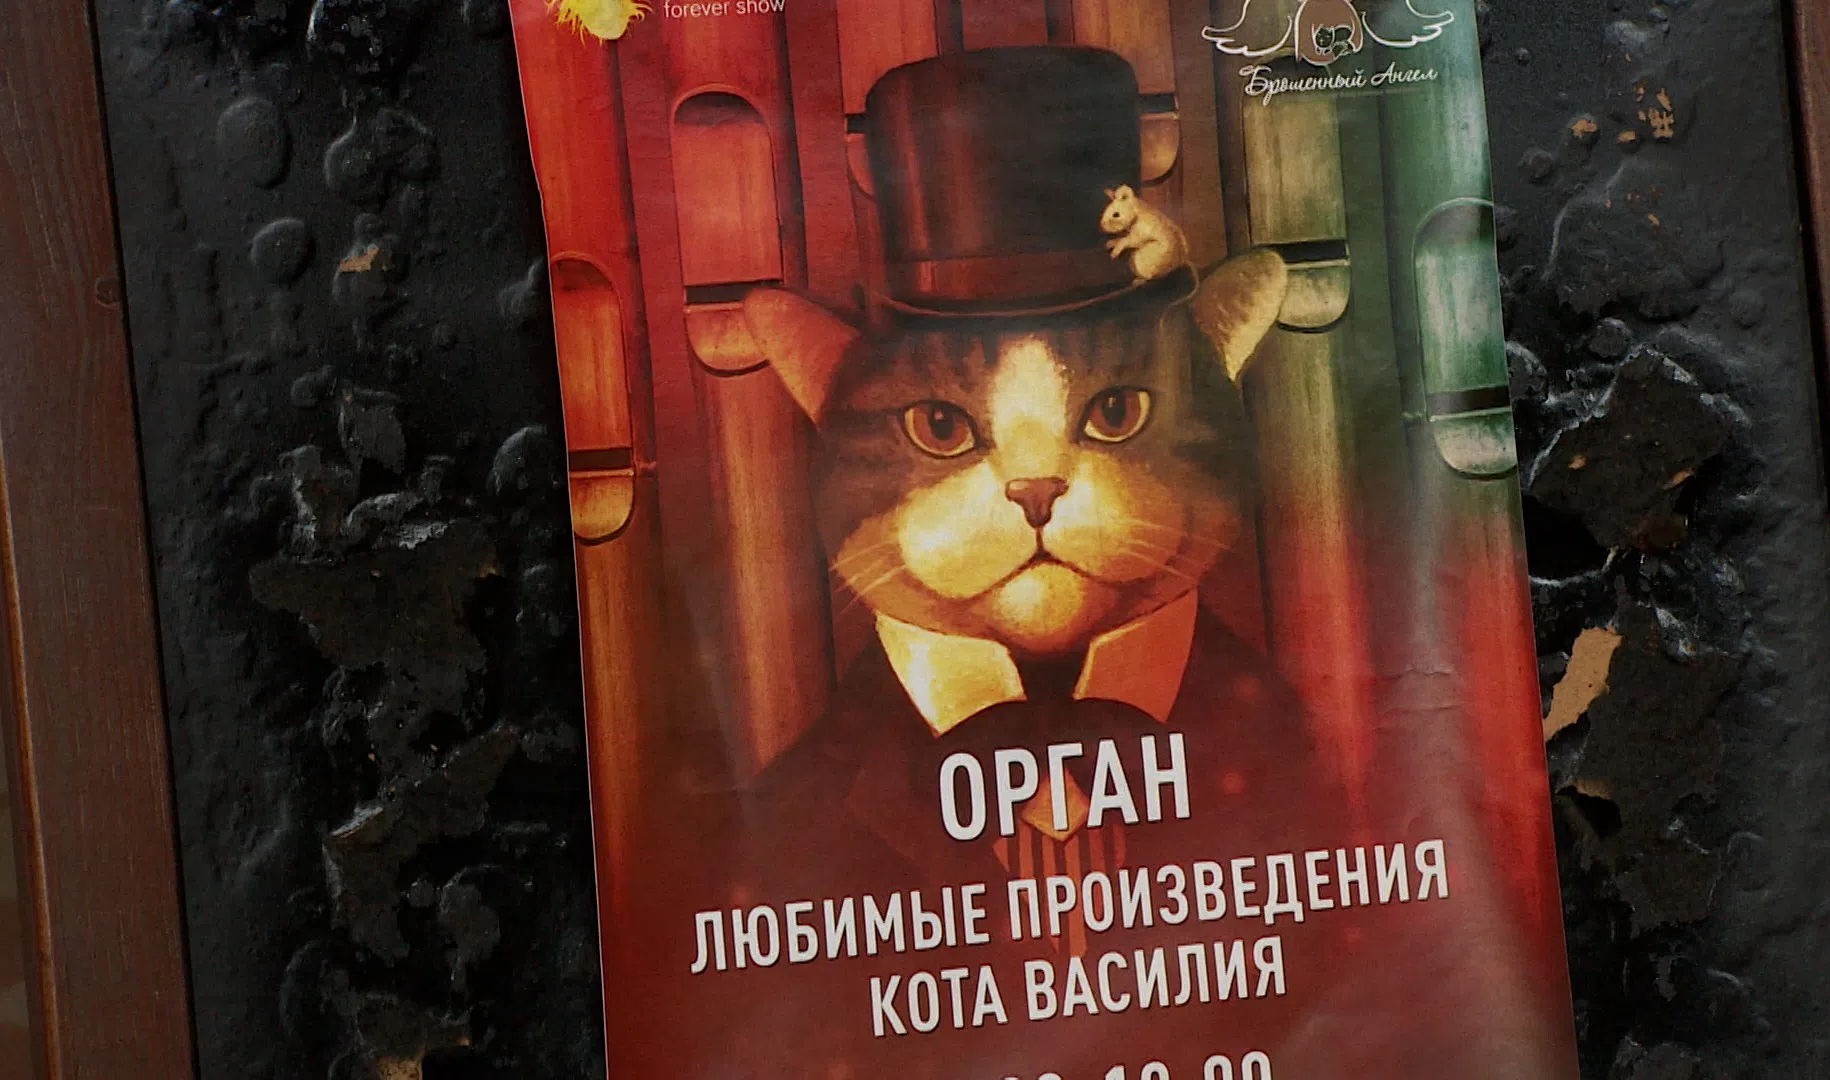 Произведение про кота. Коты в произведениях литературы. Русские произведения с котом.